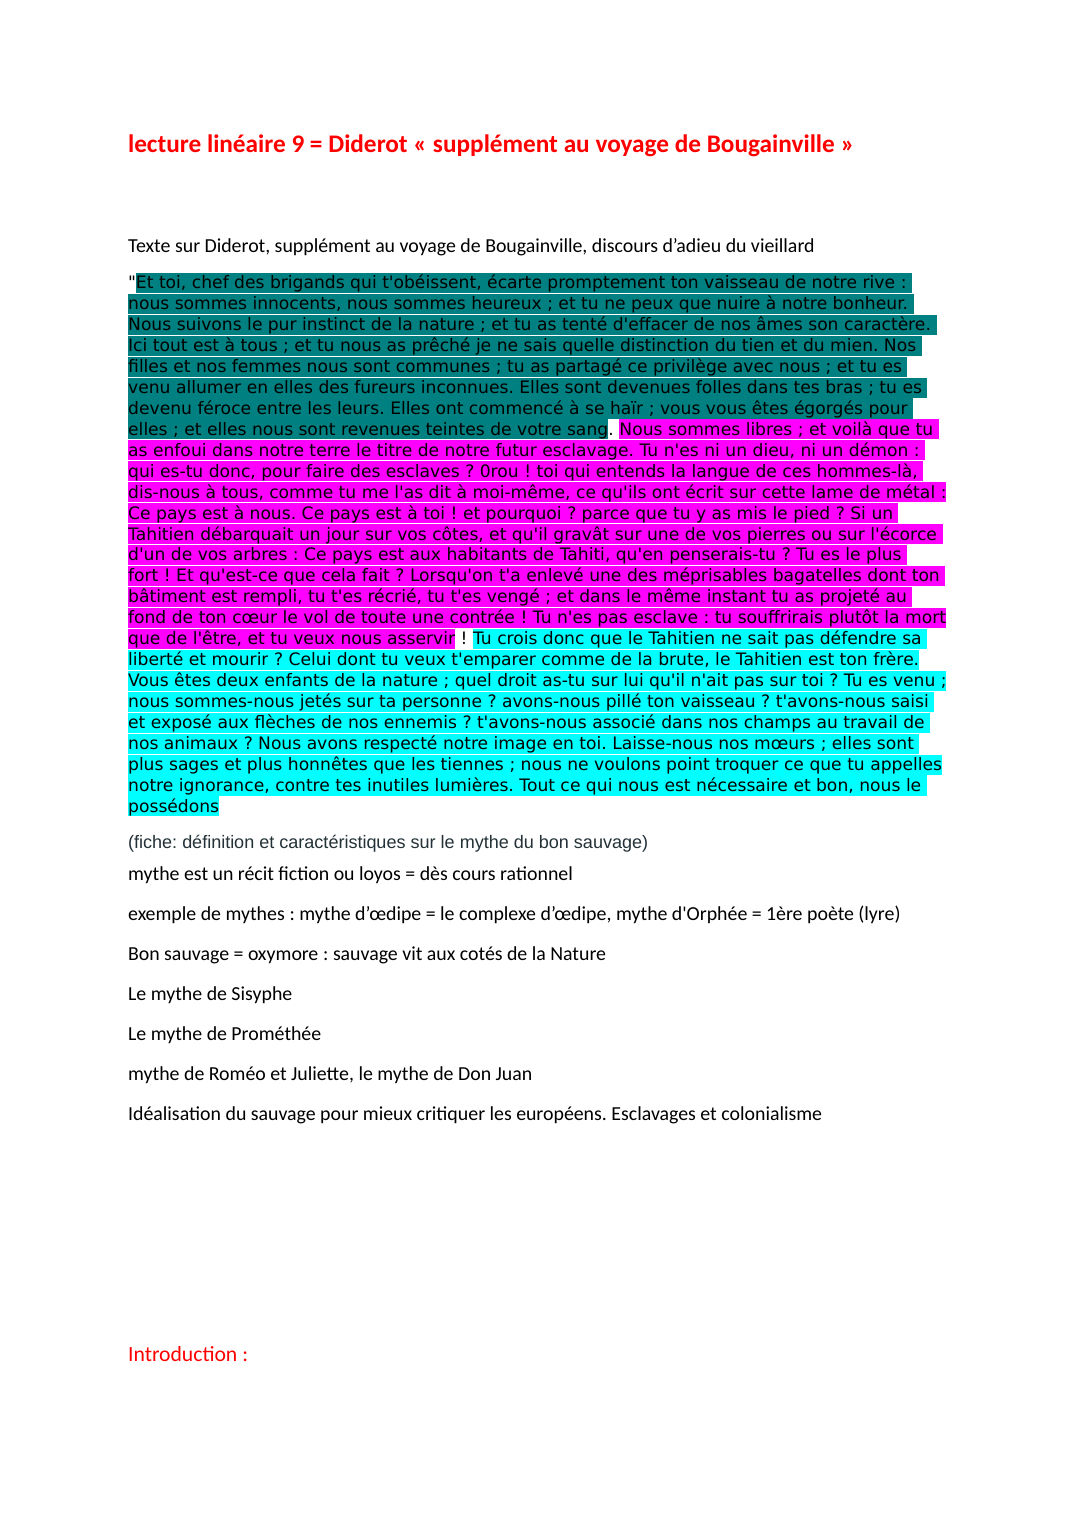 Prévisualisation du document Diderot: lecture linéaire = « supplément au voyage de Bougainville », discours d’adieu du vieillard